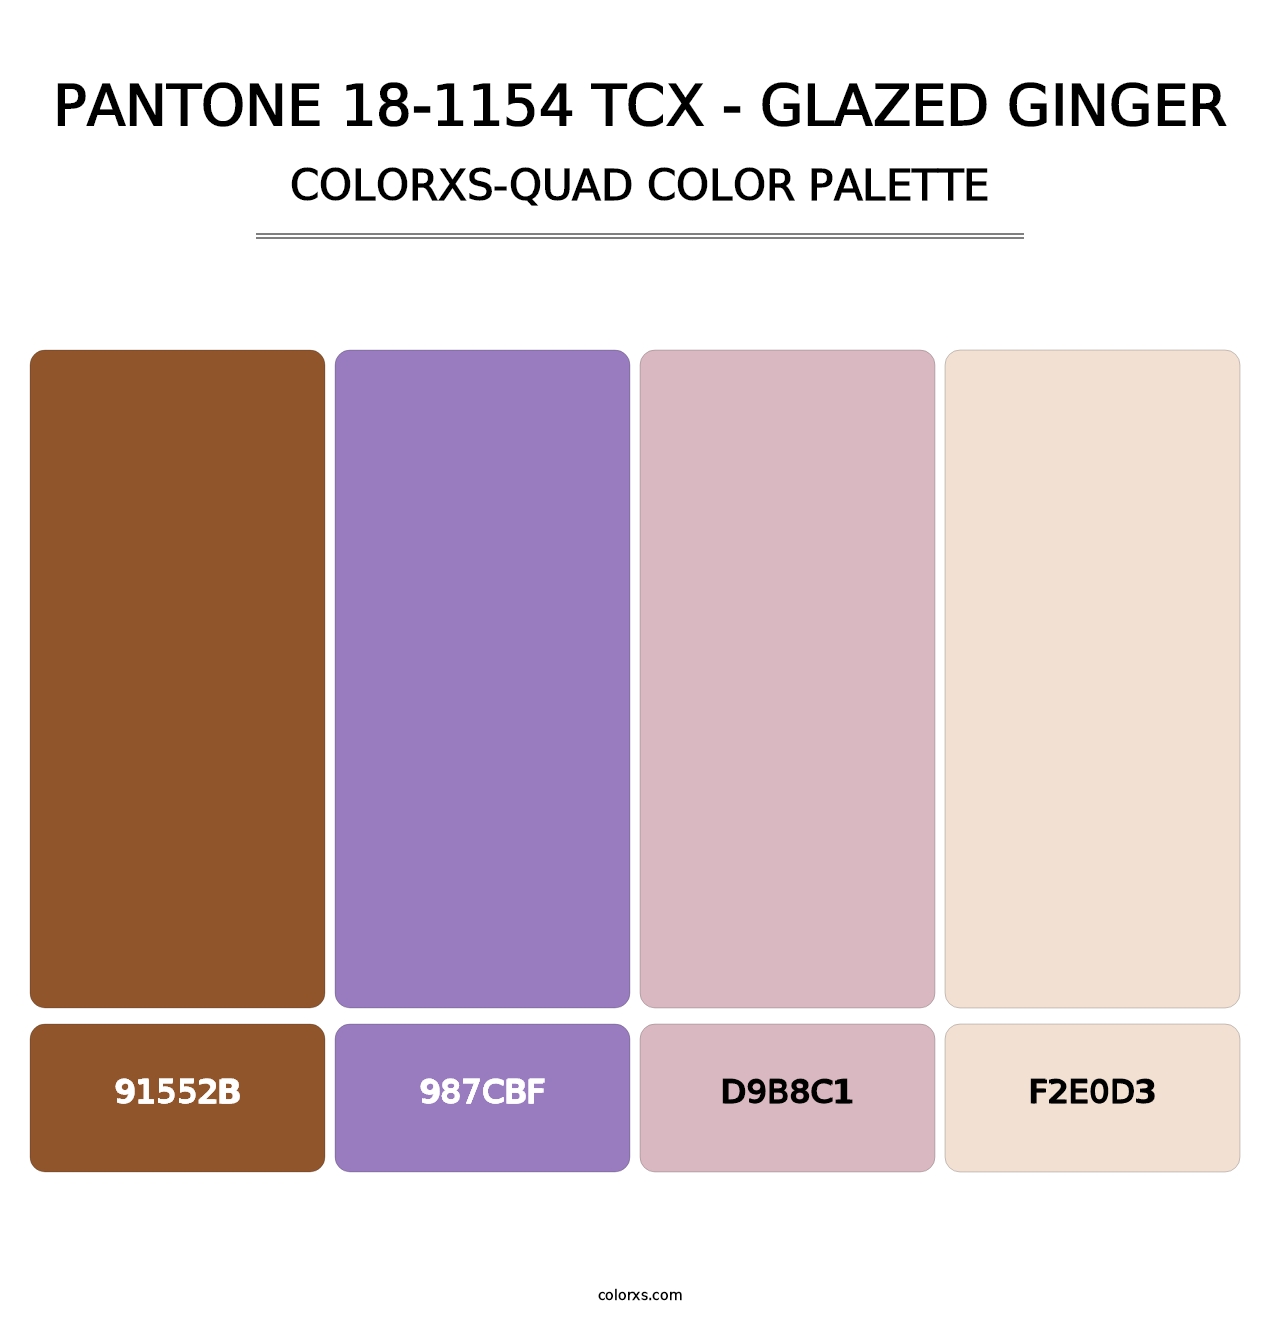 PANTONE 18-1154 TCX - Glazed Ginger - Colorxs Quad Palette